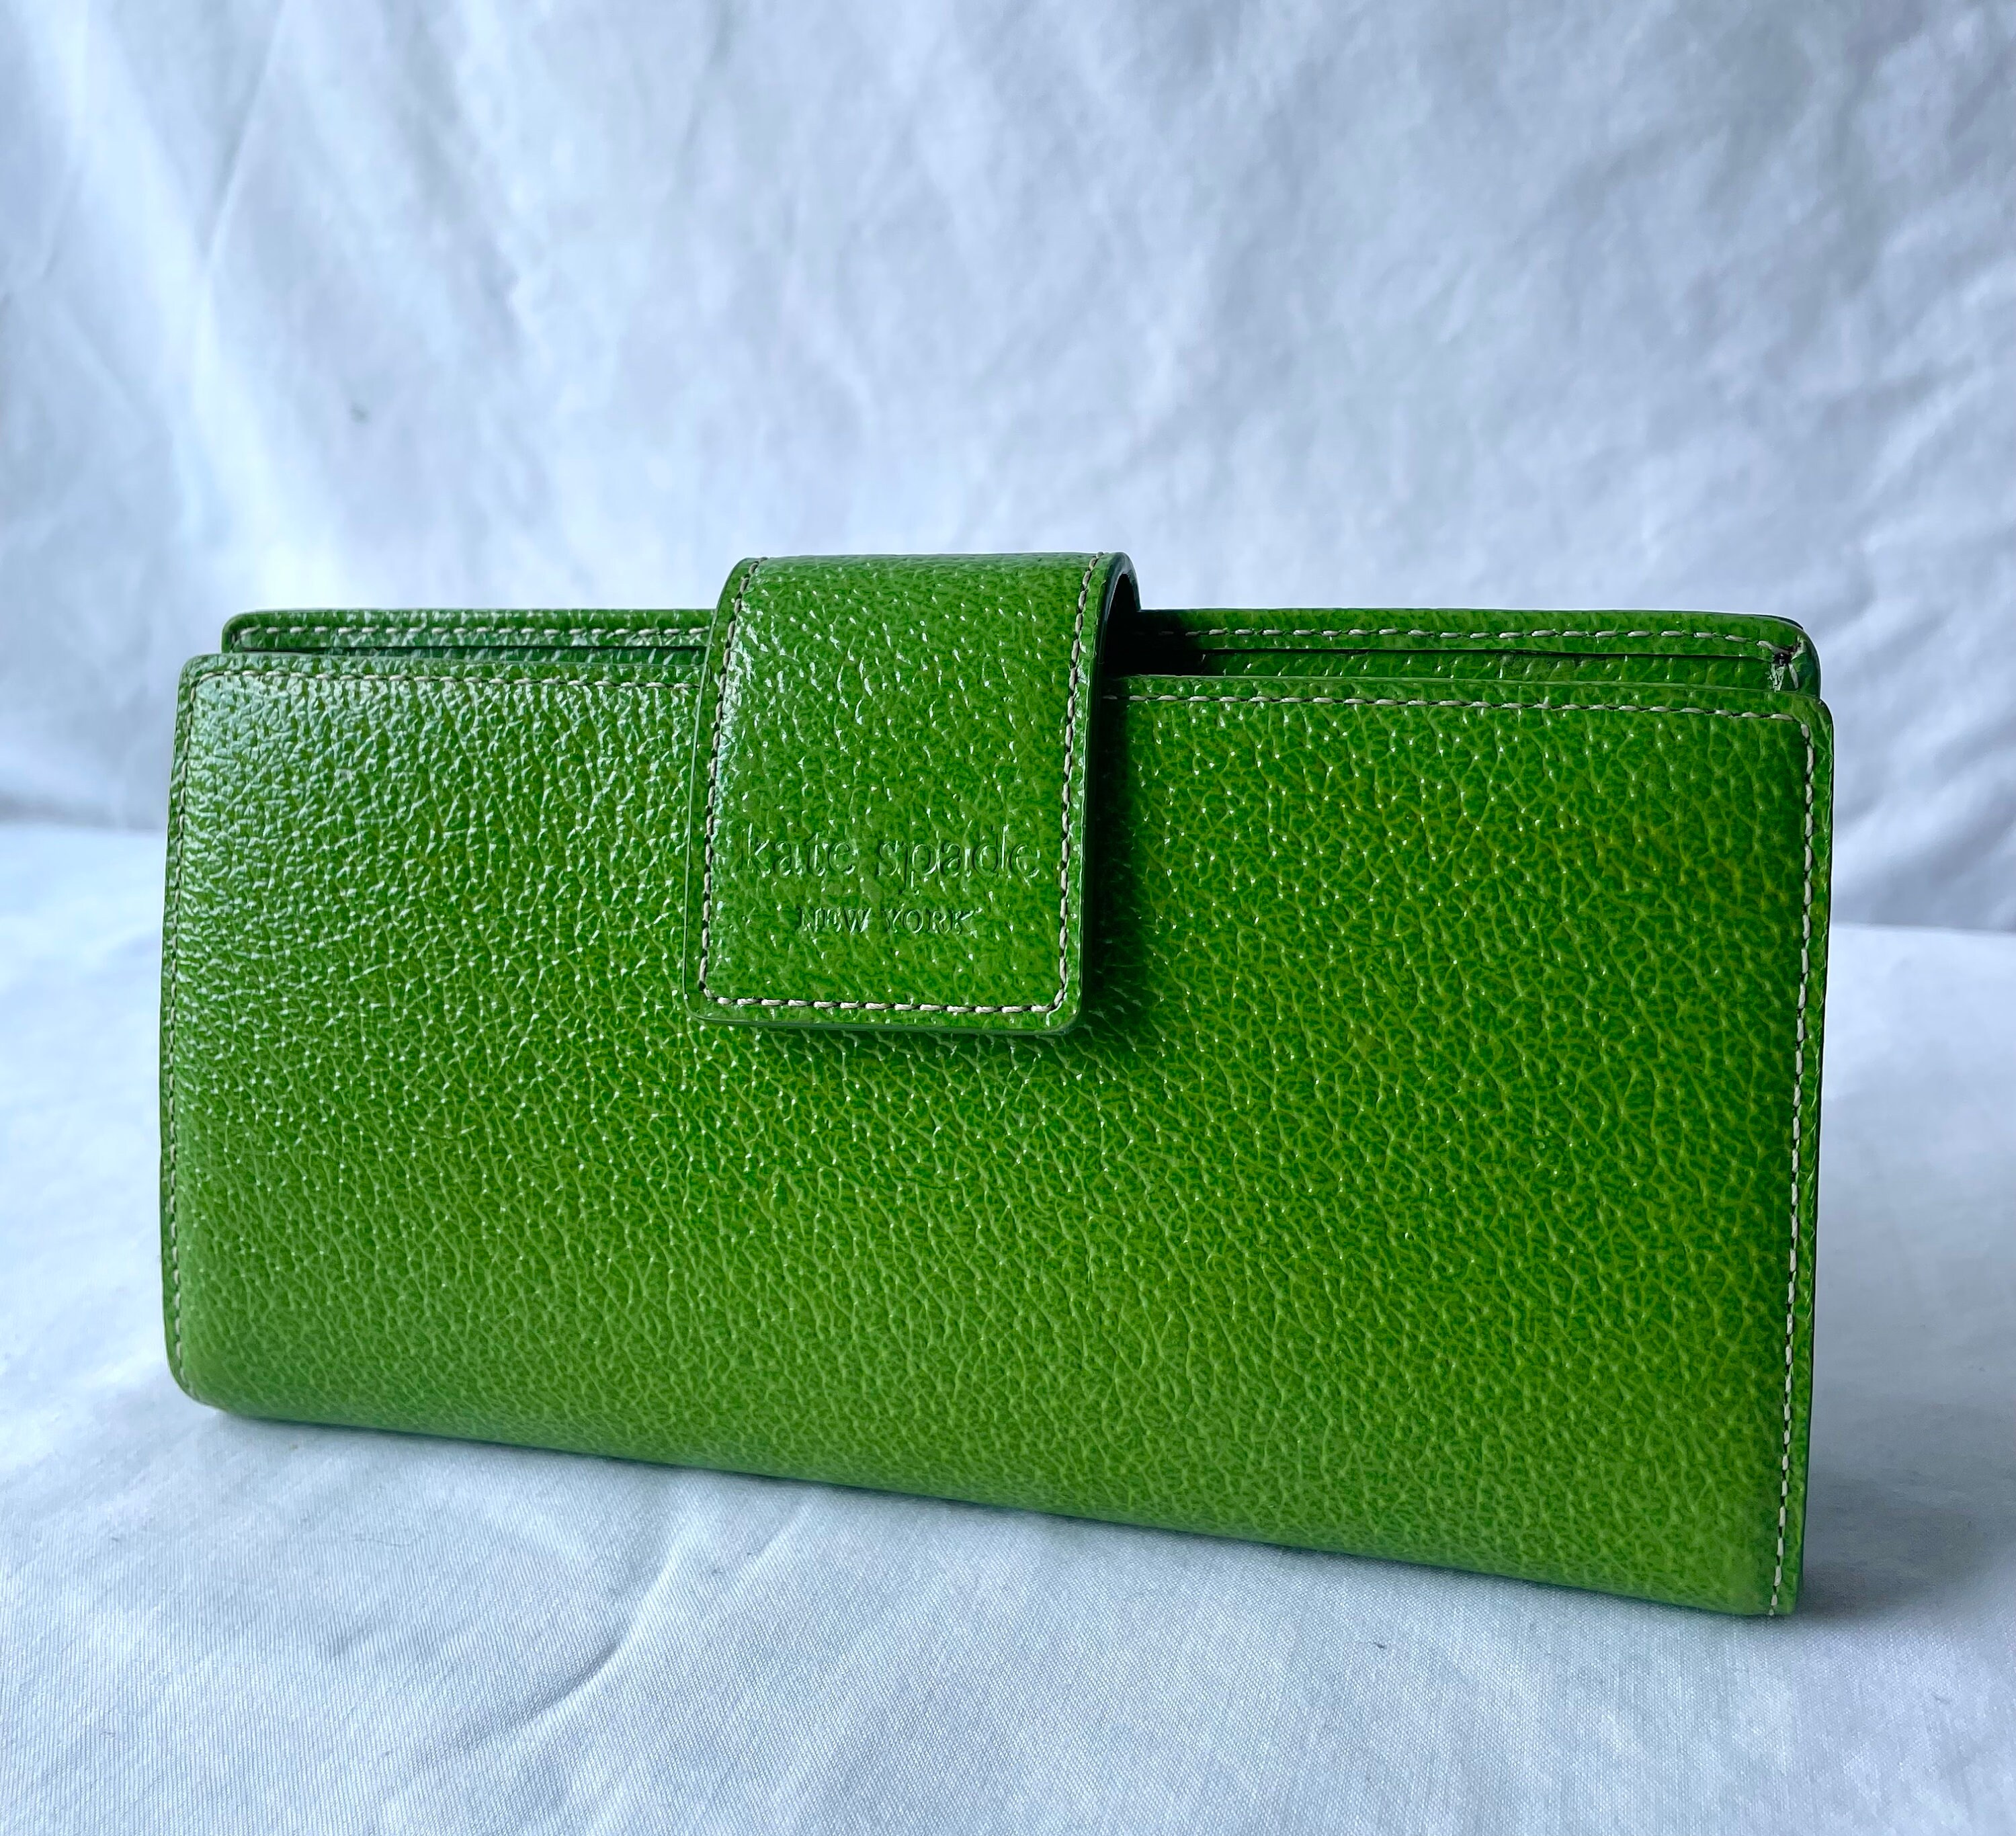 Wallet Designer By Kate Spade Size: Large